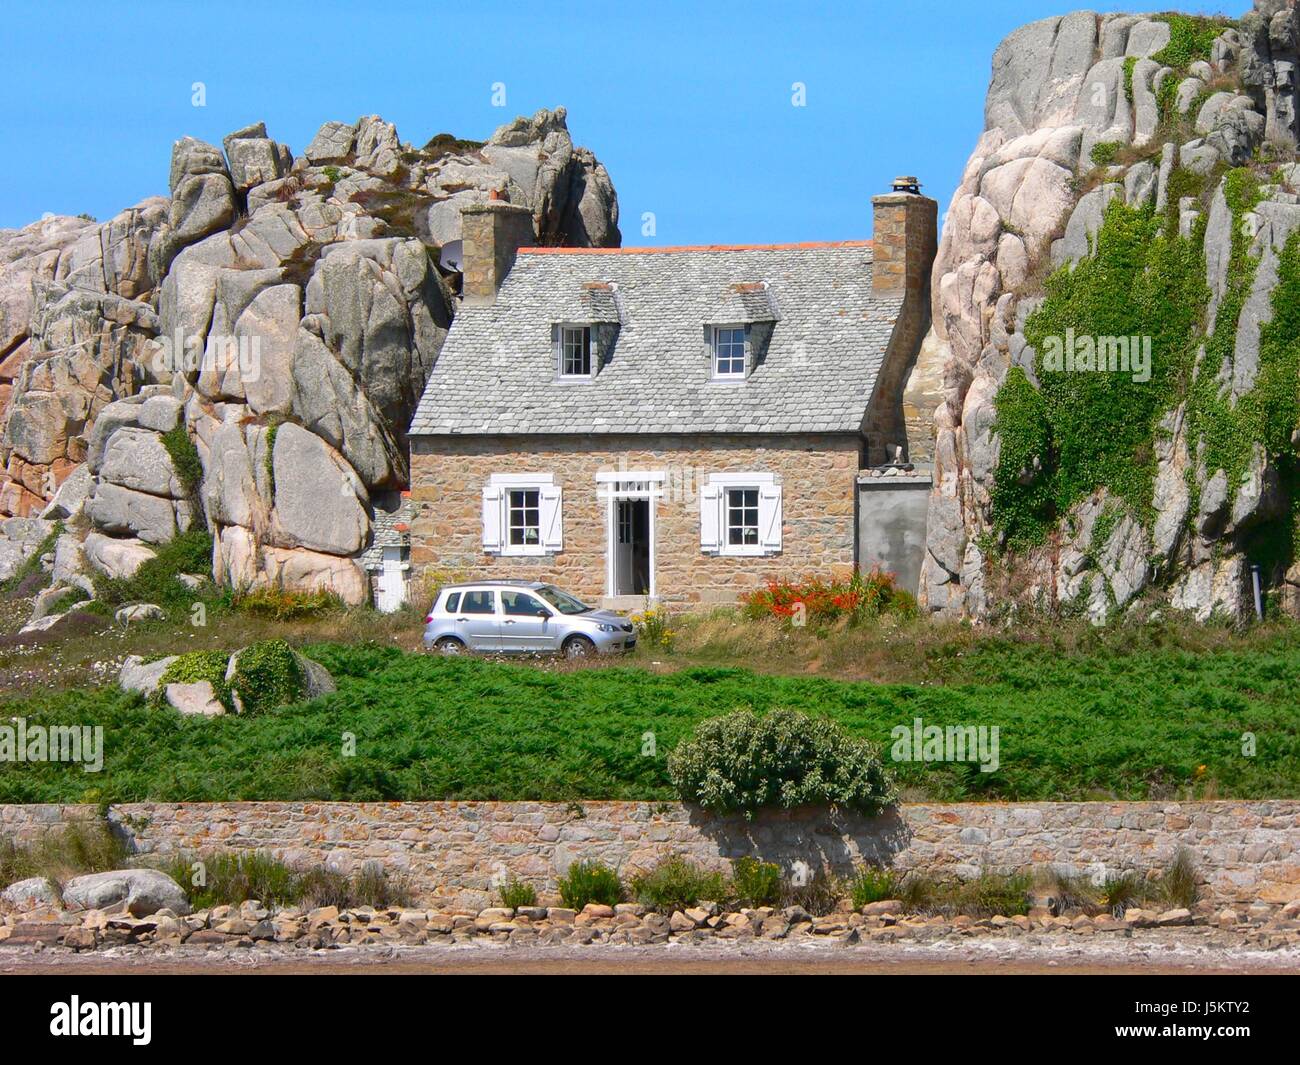 La construction de l'abri protégé rock bretagne felsenhaus bretonisches haus Banque D'Images